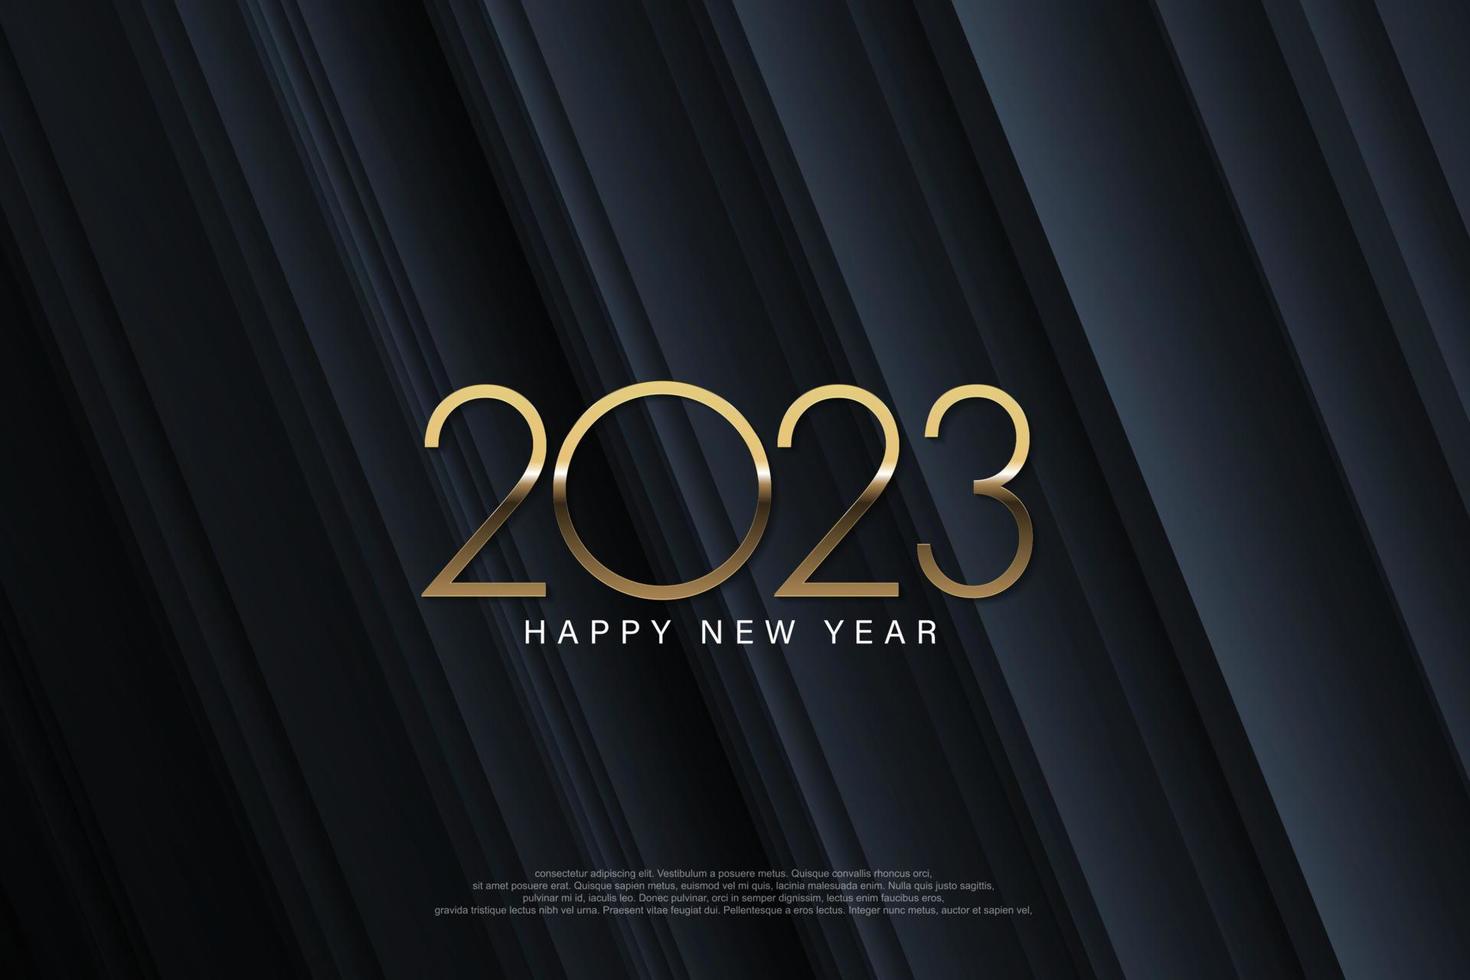 2023 gelukkig nieuwjaar elegant ontwerp - vectorillustratie van gouden 2023 logo nummers op donkergrijze achtergrond - perfecte typografie voor 2023 bewaar de datum luxe ontwerpen en nieuwjaarsviering. vector